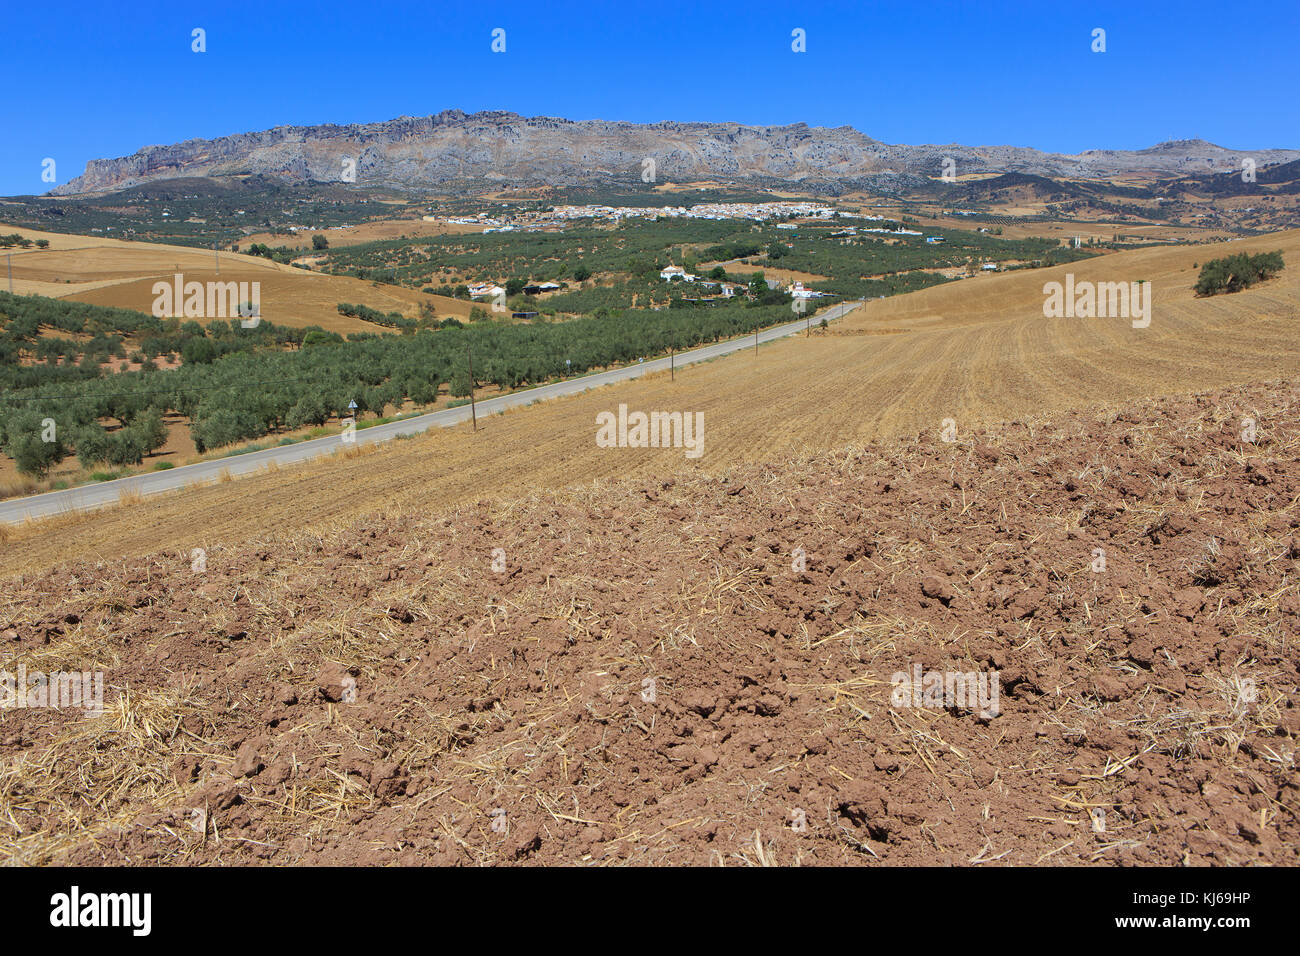 Vue panoramique sur le karst des formations rocheuses d'El Torcal de Antequera, réserve naturelle située au sud de la ville d'Antequera, Espagne Banque D'Images